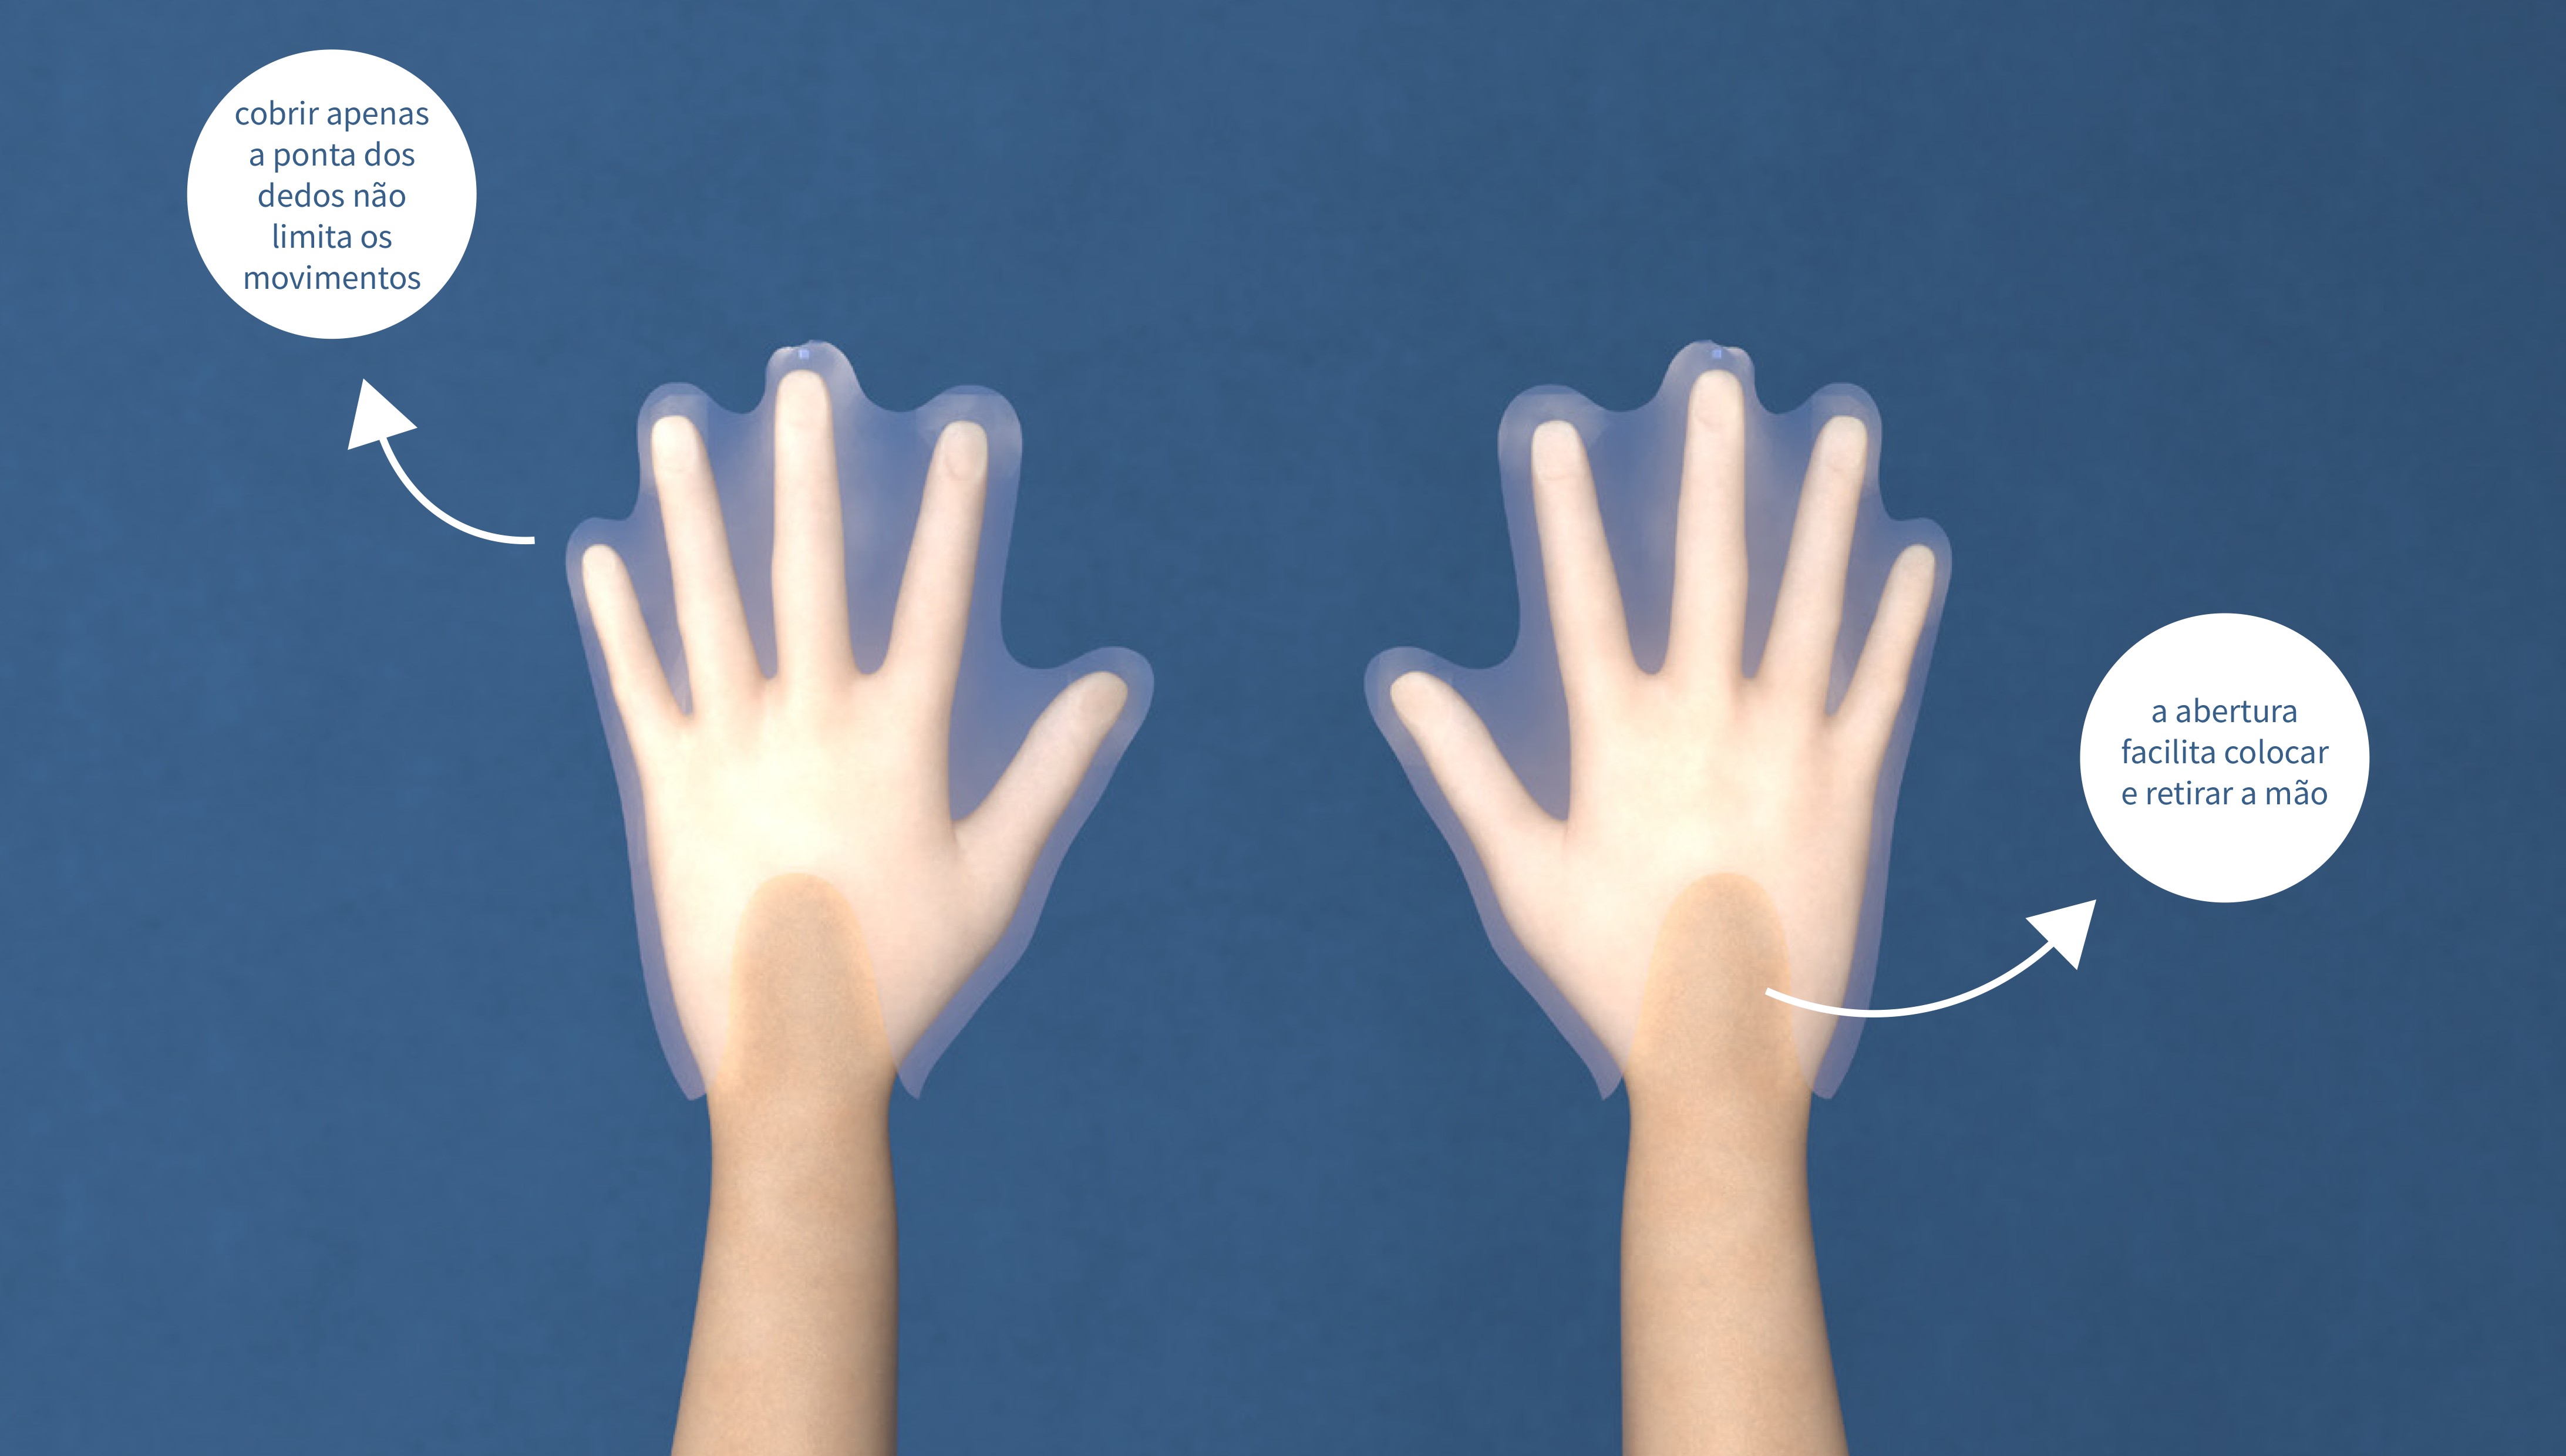 A luva possui um velcro em cada dedo, tornando possível grudar a palma de uma luva na outra, retirando-a sem contato com a parte externa (Foto: Divulgação)